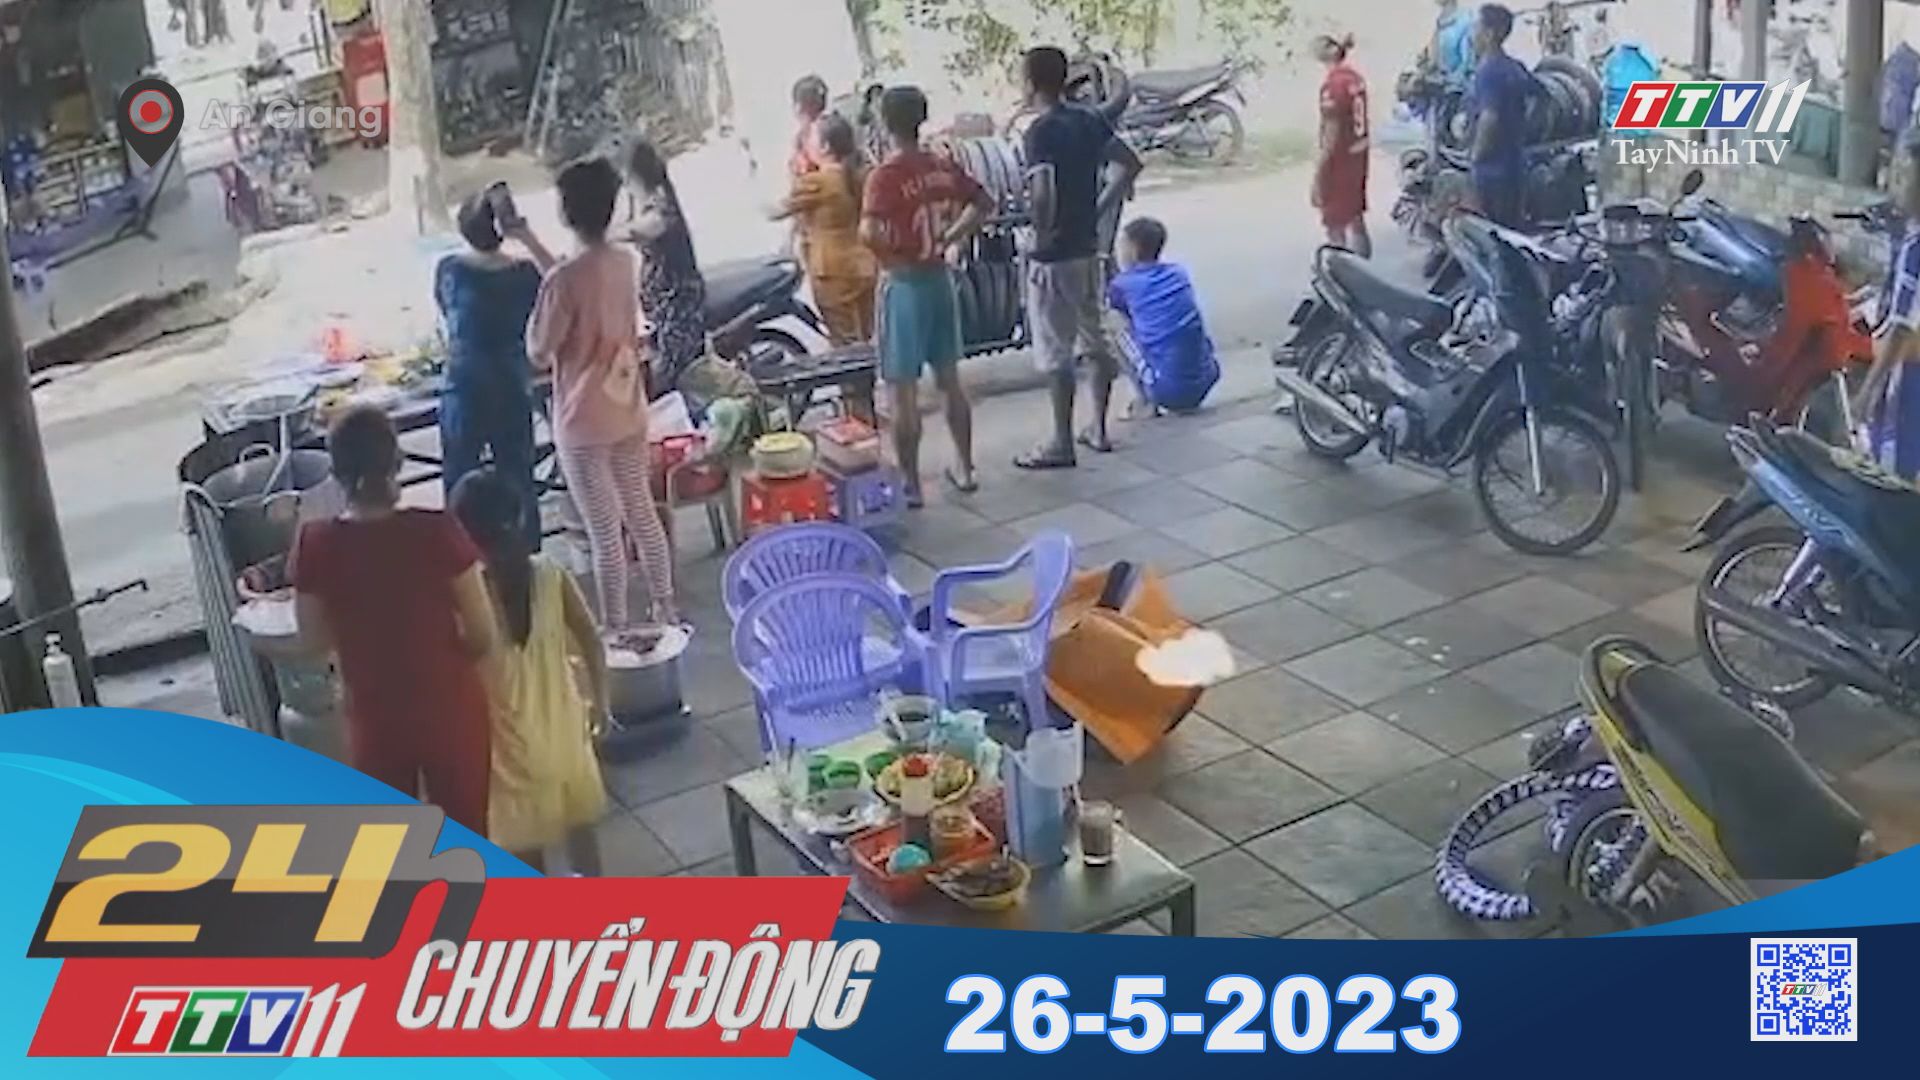 24h Chuyển động 26-5-2023 | Tin tức hôm nay | TayNinhTV